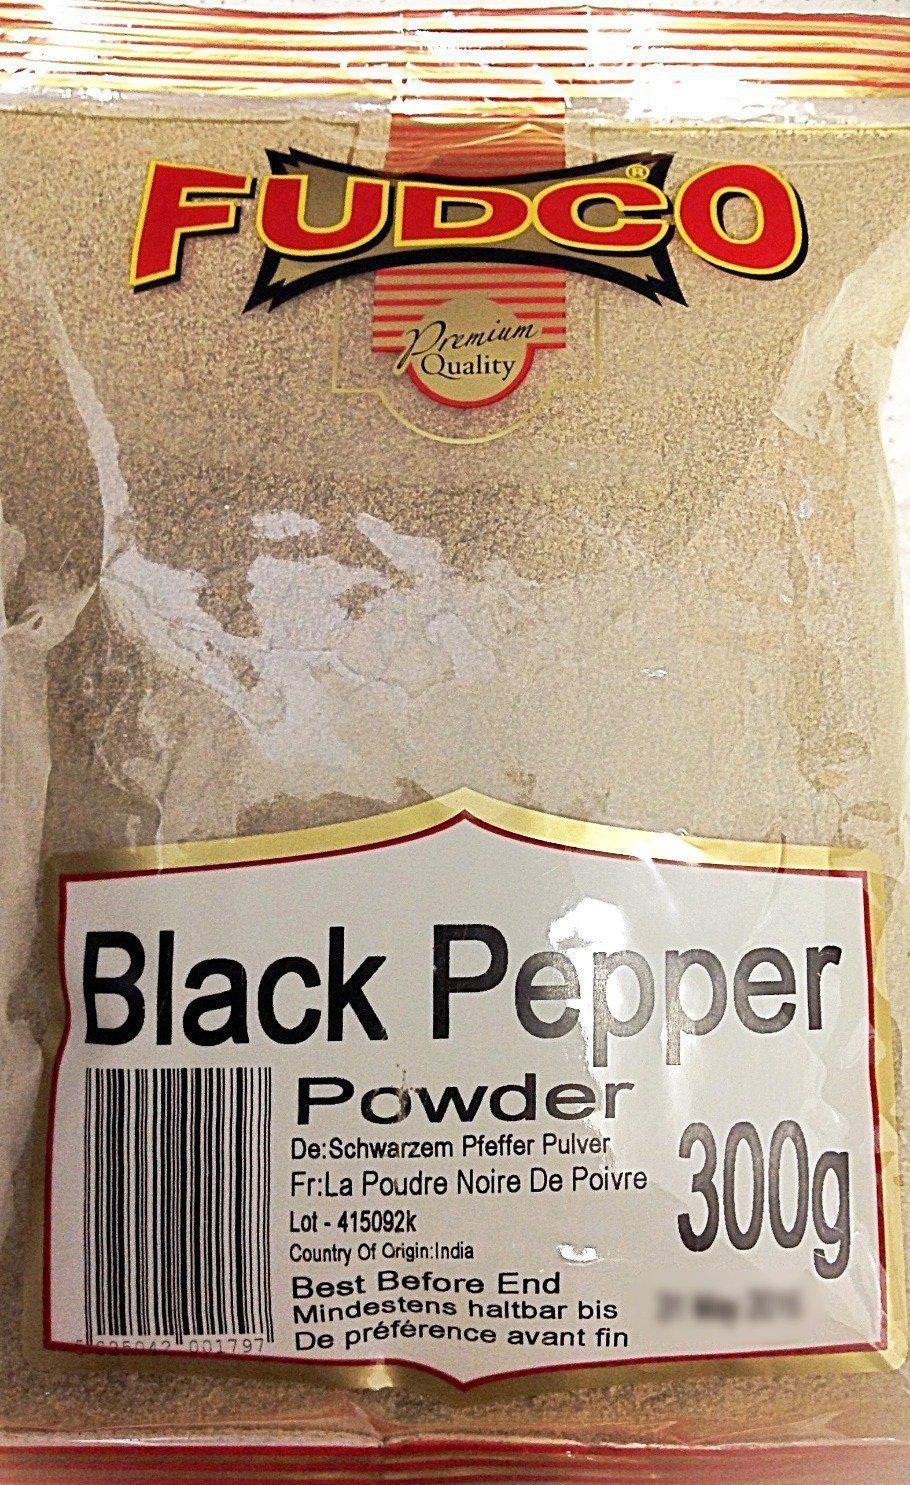 Fudco Black Pepper Powder 300g